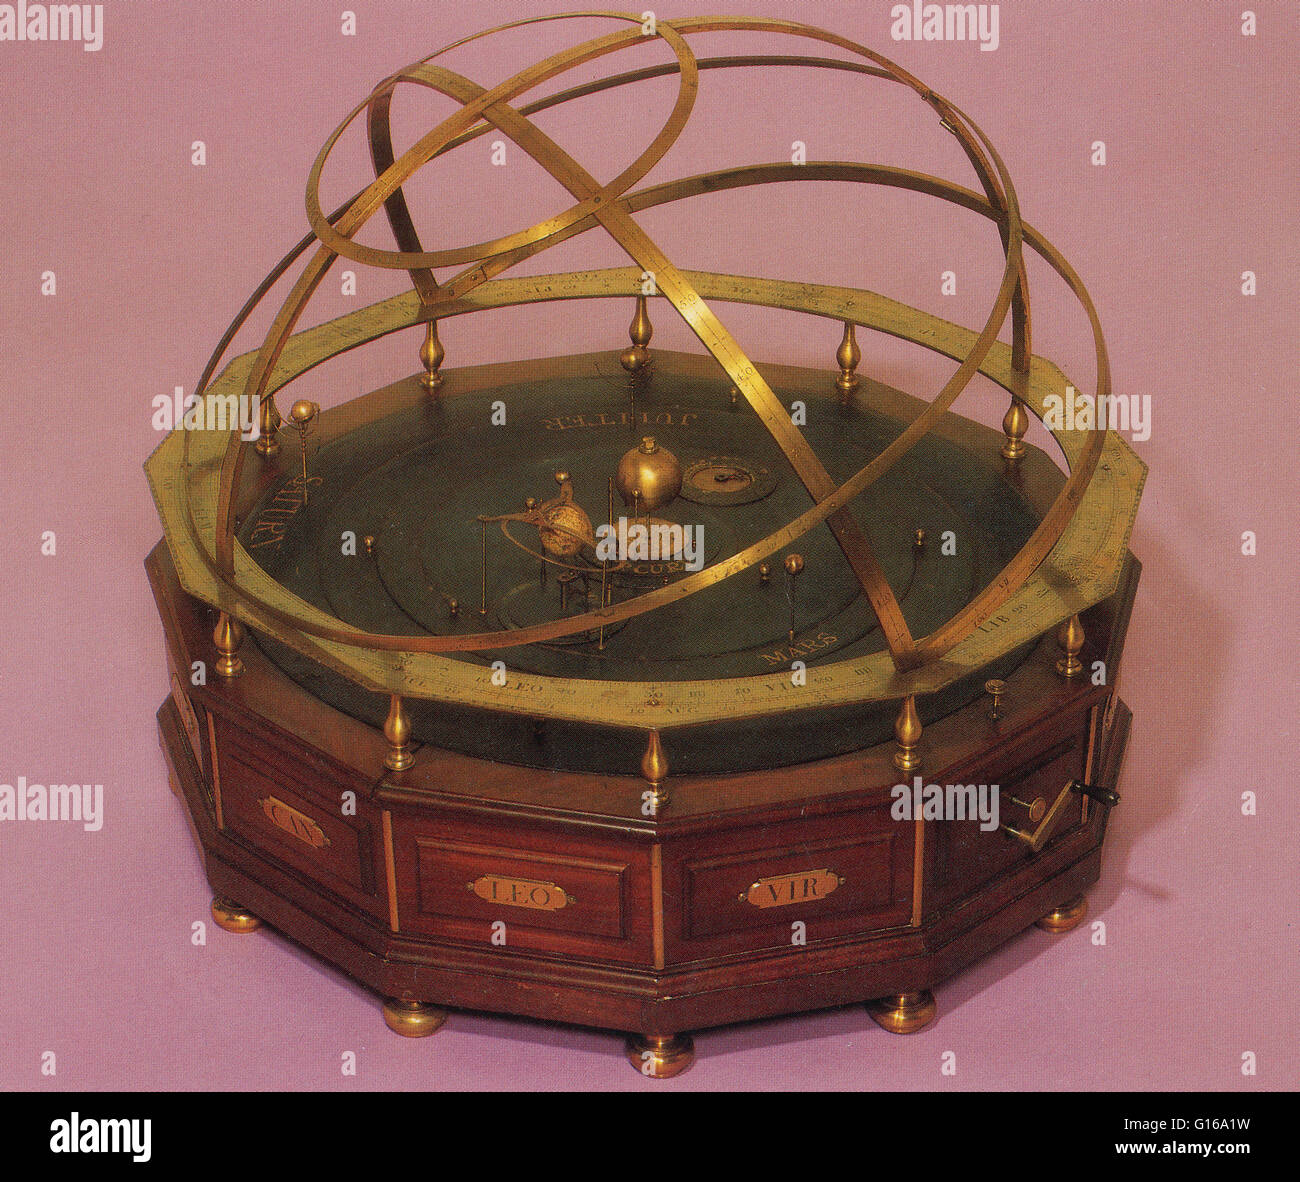 Un orrery è un dispositivo meccanico che illustra le posizioni relative e i movimenti dei pianeti e lune nel sistema solare in un modello eliocentrico. Sebbene i greci avevano lavorando planetaria, il primo orrery che era un planetario di epoca moderna Foto Stock